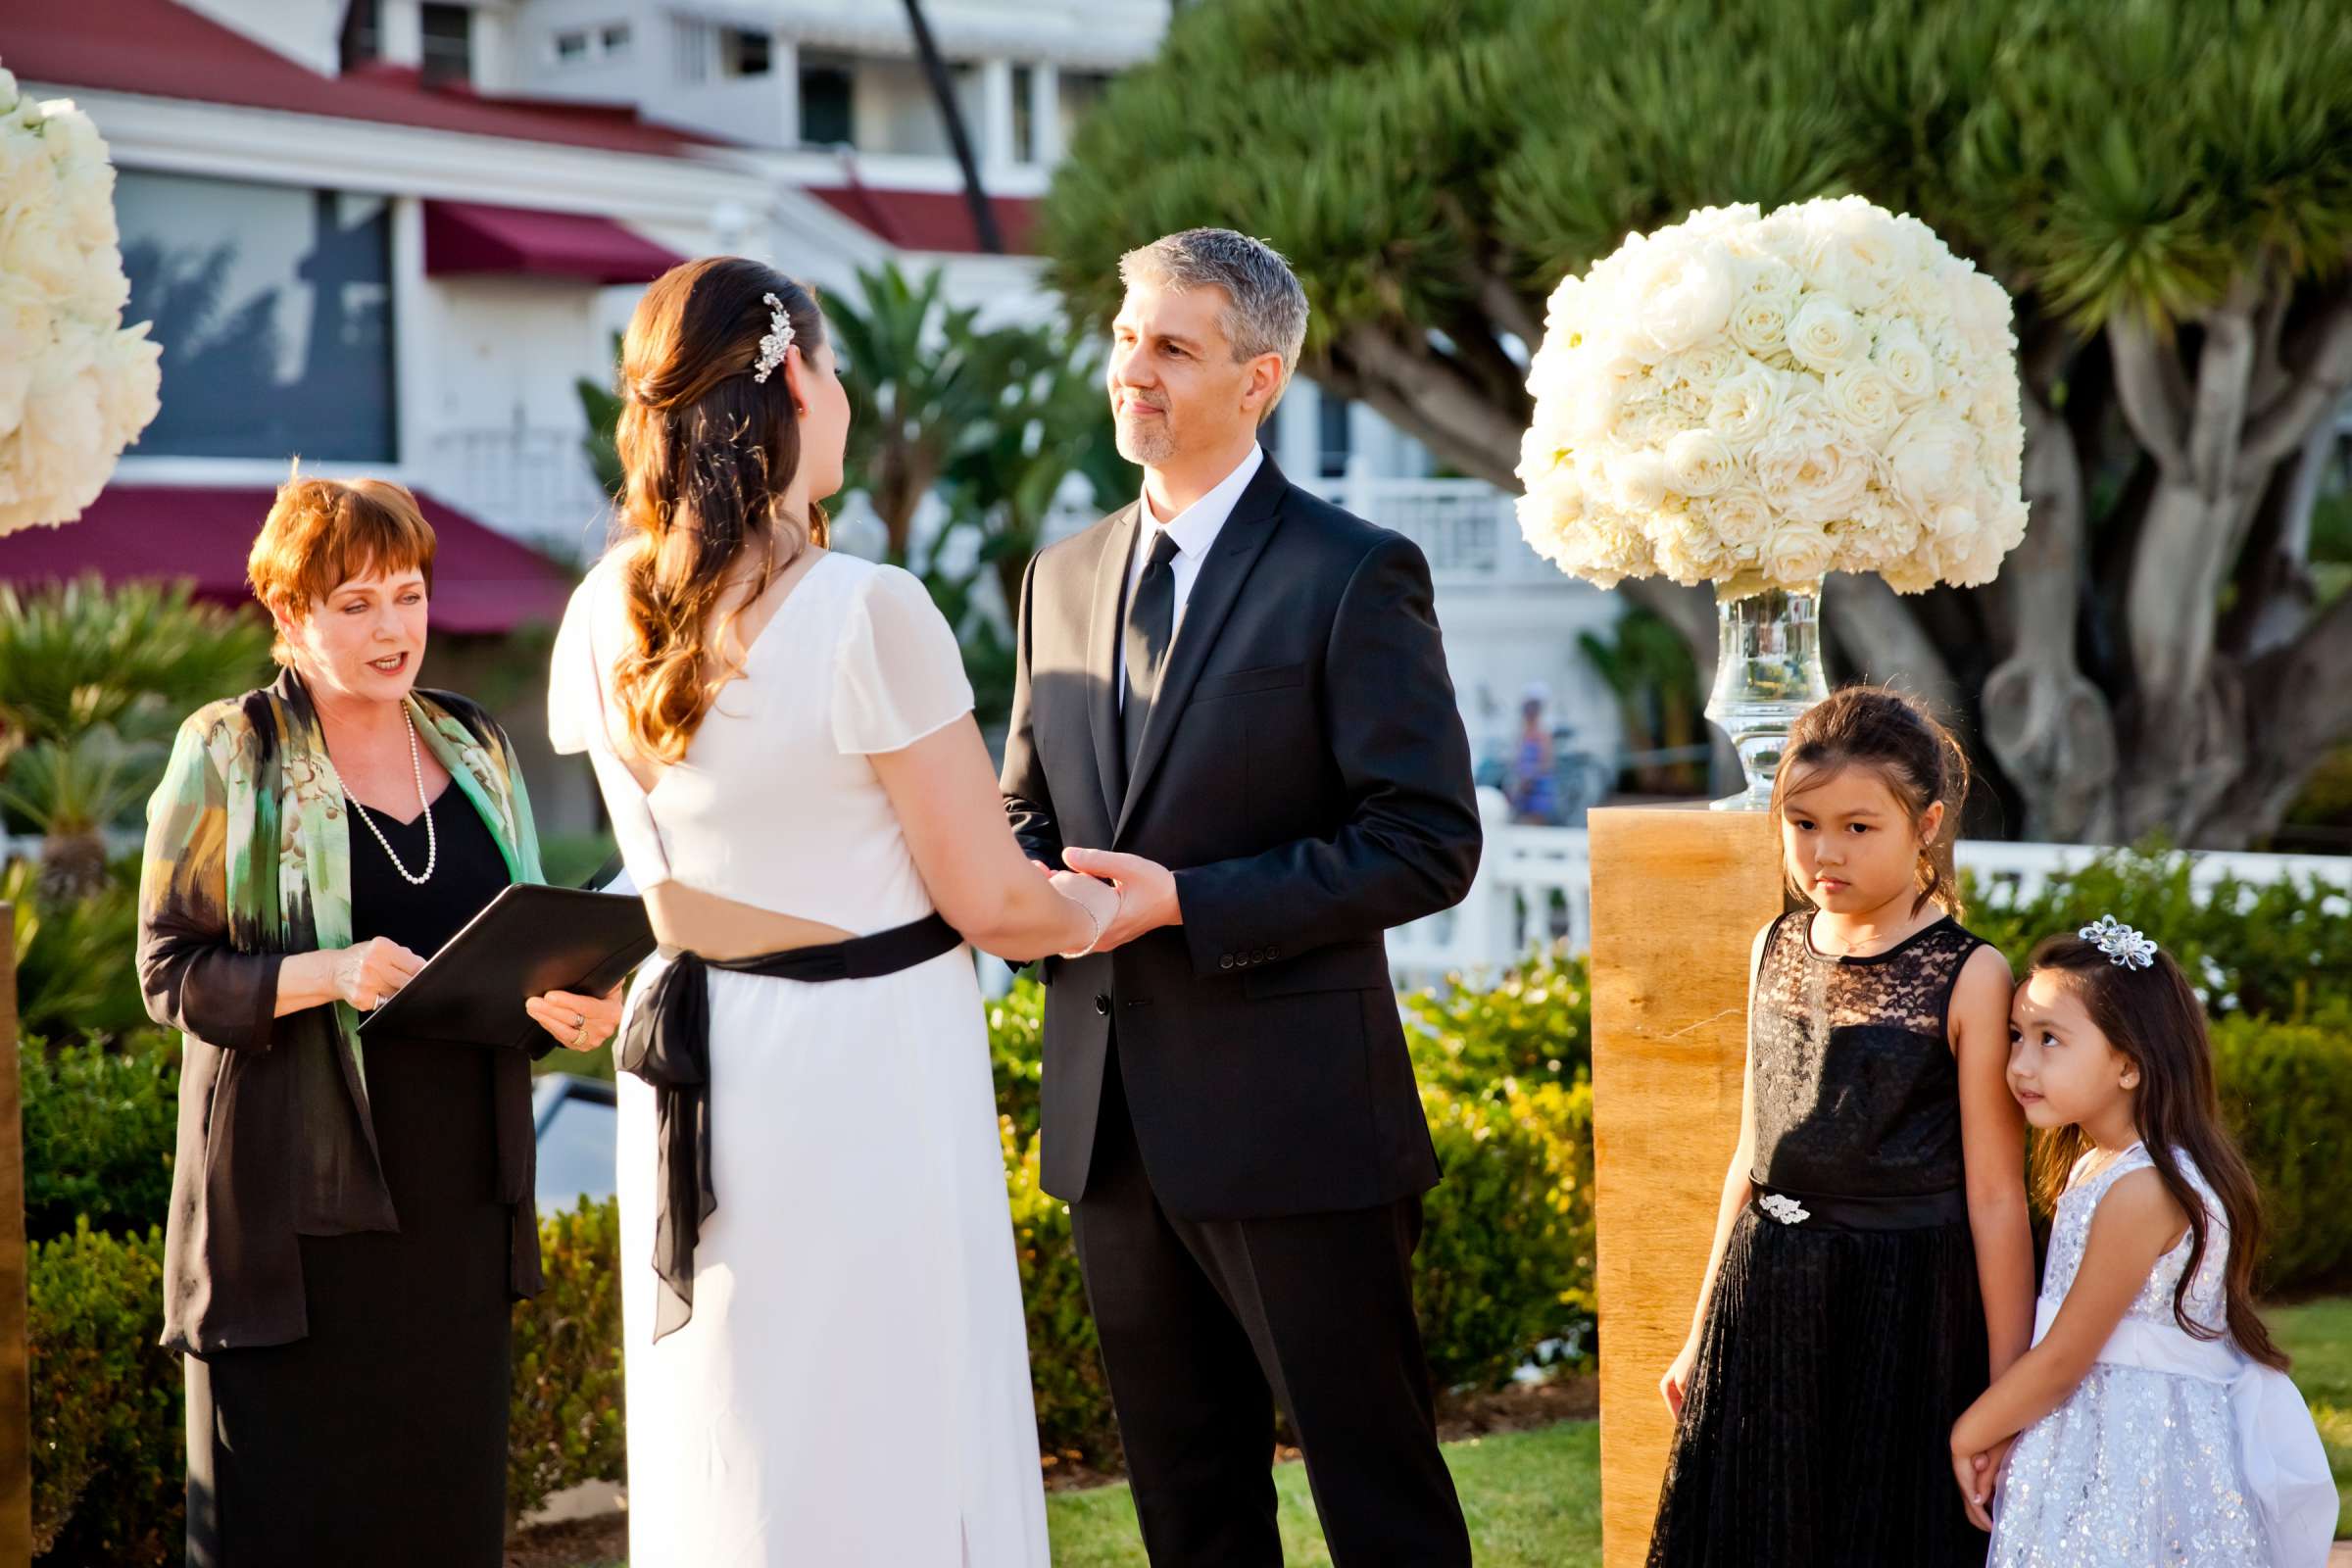 Hotel Del Coronado Wedding, Melis and Marc Wedding Photo #27 by True Photography